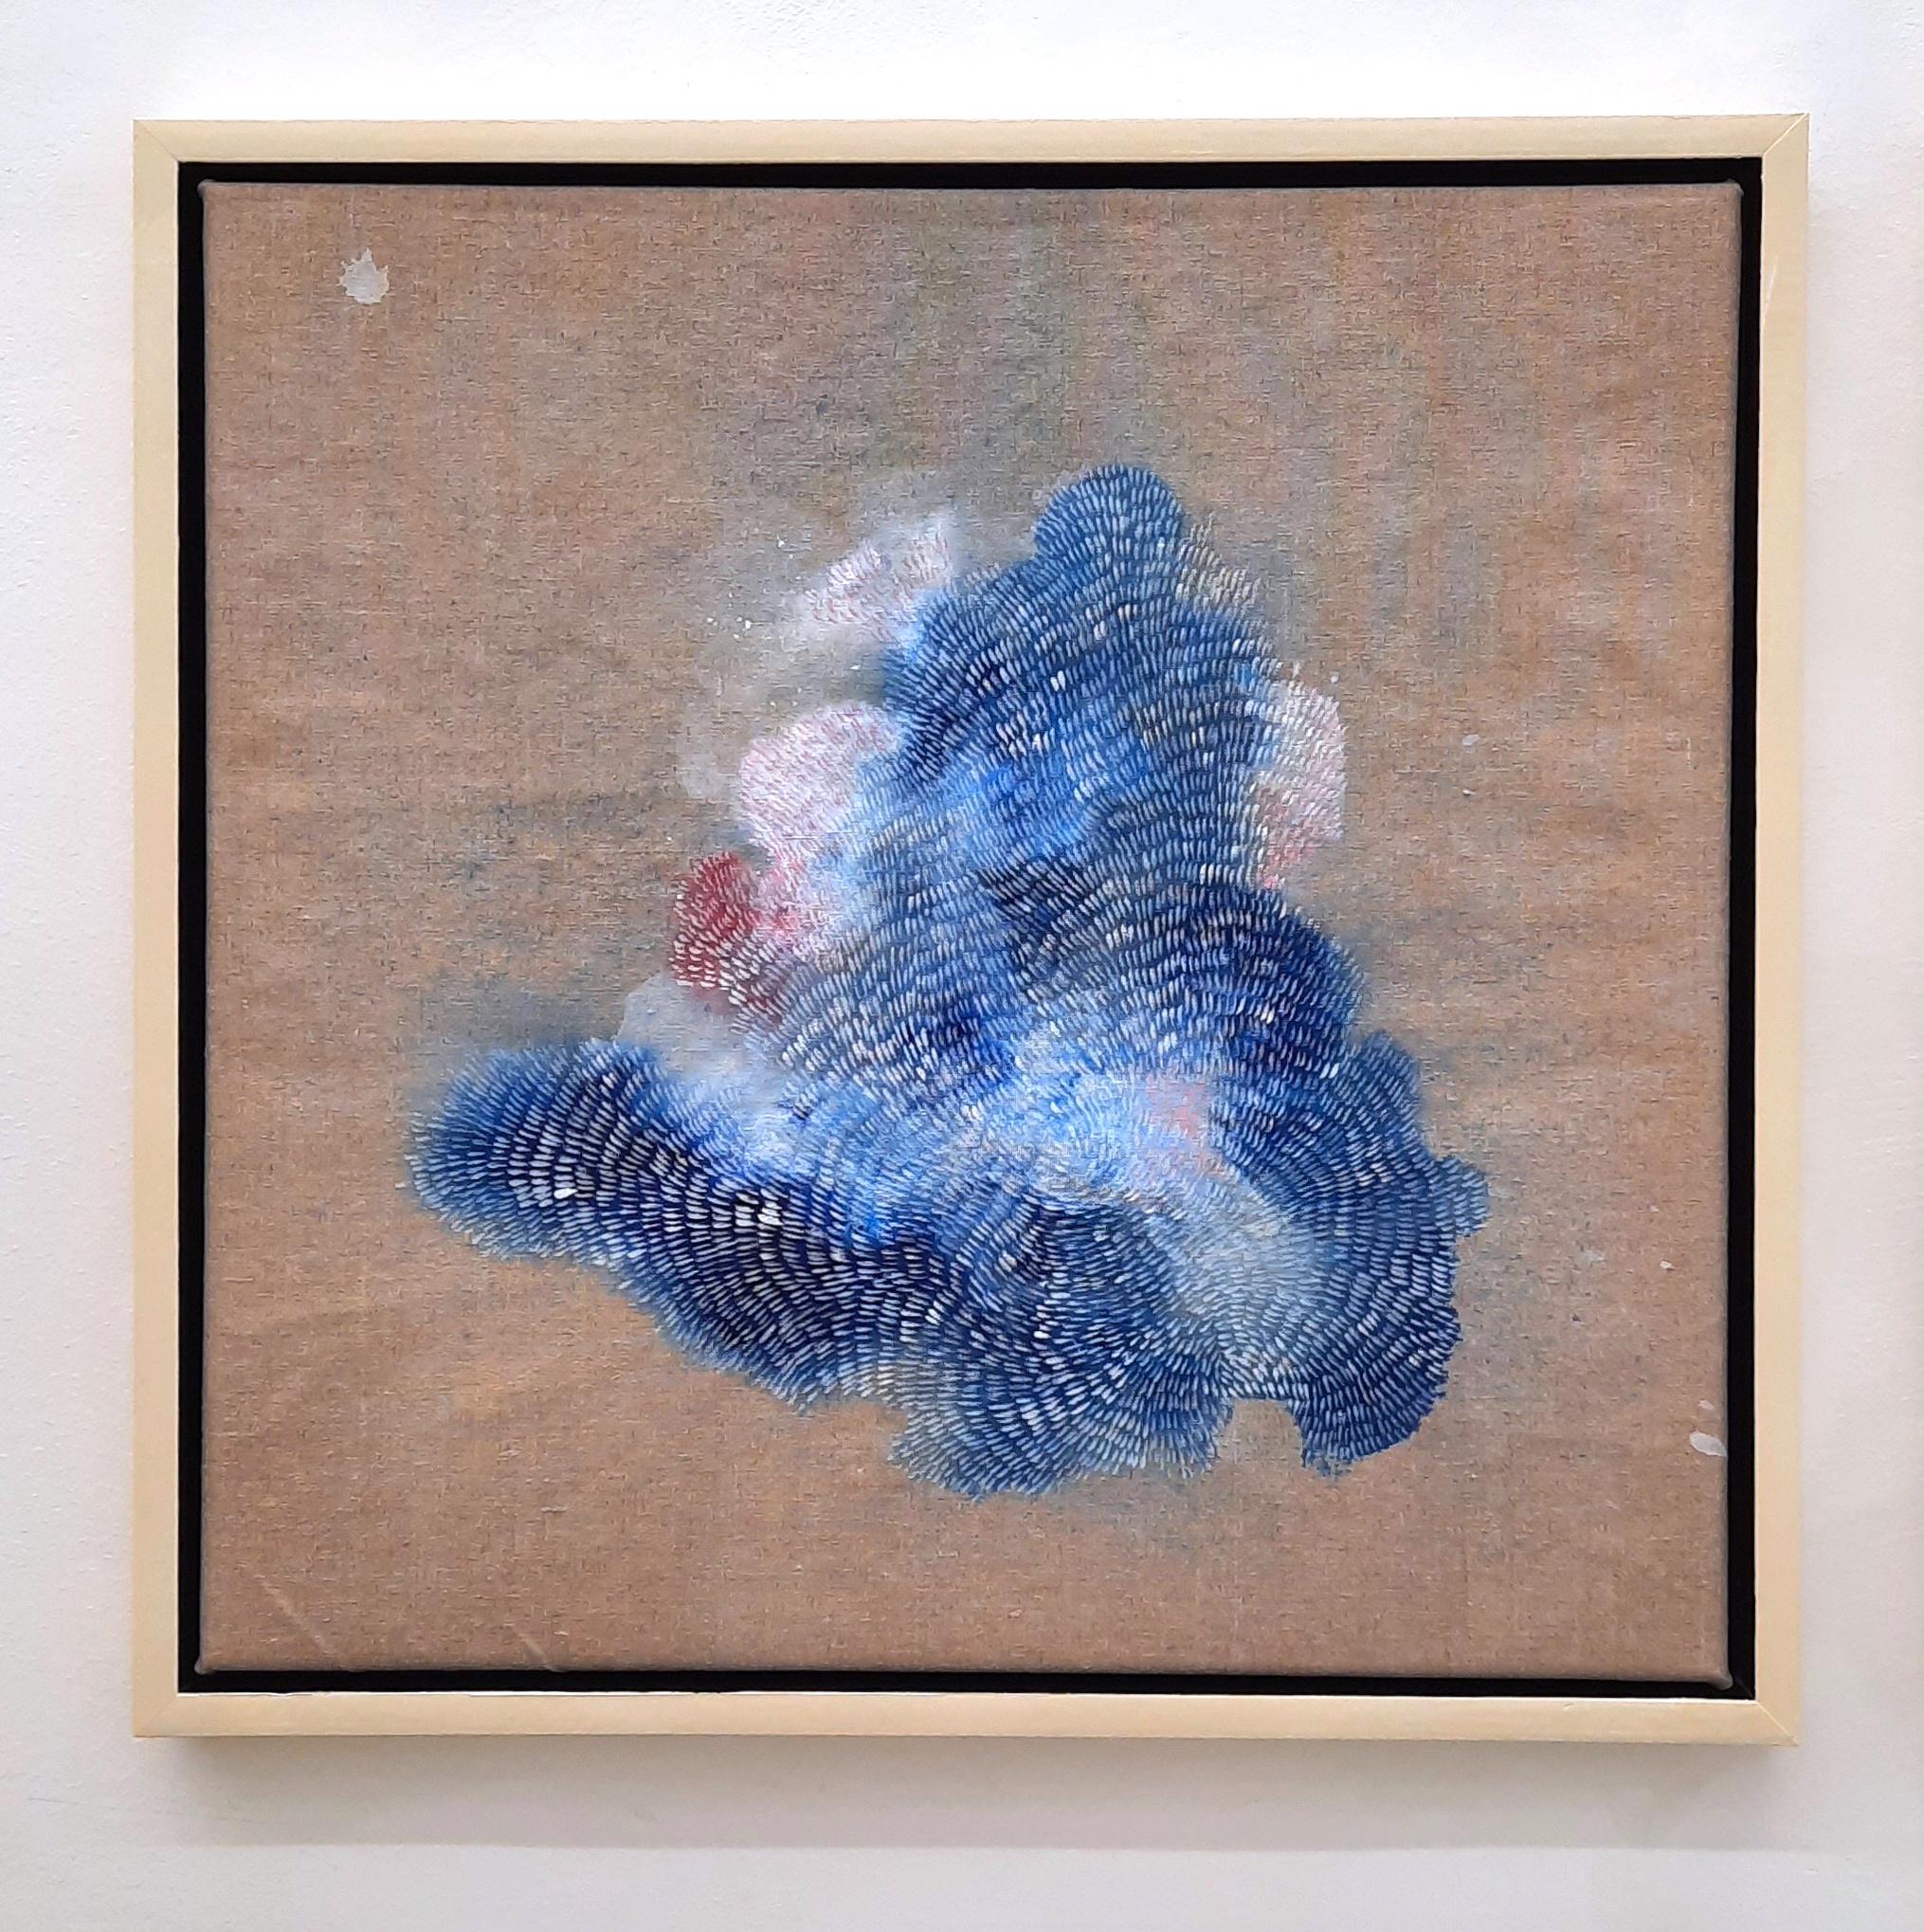 Kenji Lim
Islands of Spray 7 - Contemporary Abstract Blue and Pink Landscape Painting
Acryl auf Leinen, gerahmt
54 cm x 54 cm
Einzigartige Kopie

Kenji Lim ist ein britischer Künstler, der in Essex lebt und 1980 in Singapur geboren wurde. Er